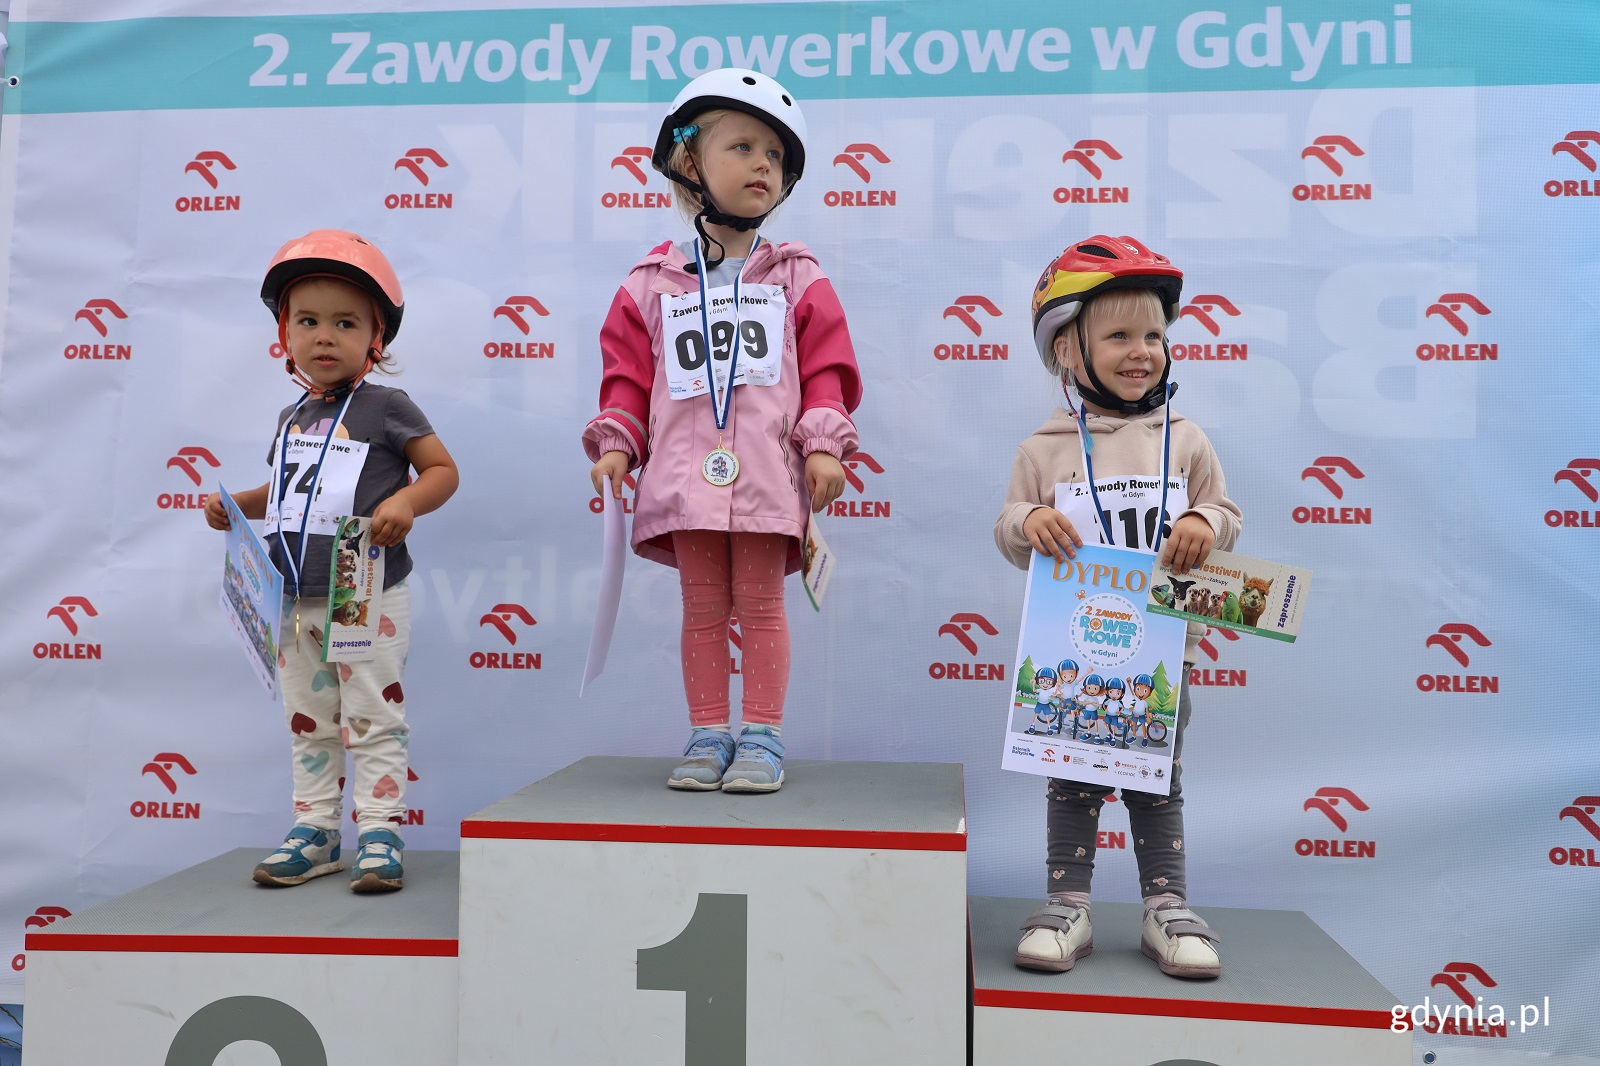 Dzieci na podium zawodów rowerkowych w Gdyni (fot. Dawid Kowalski)